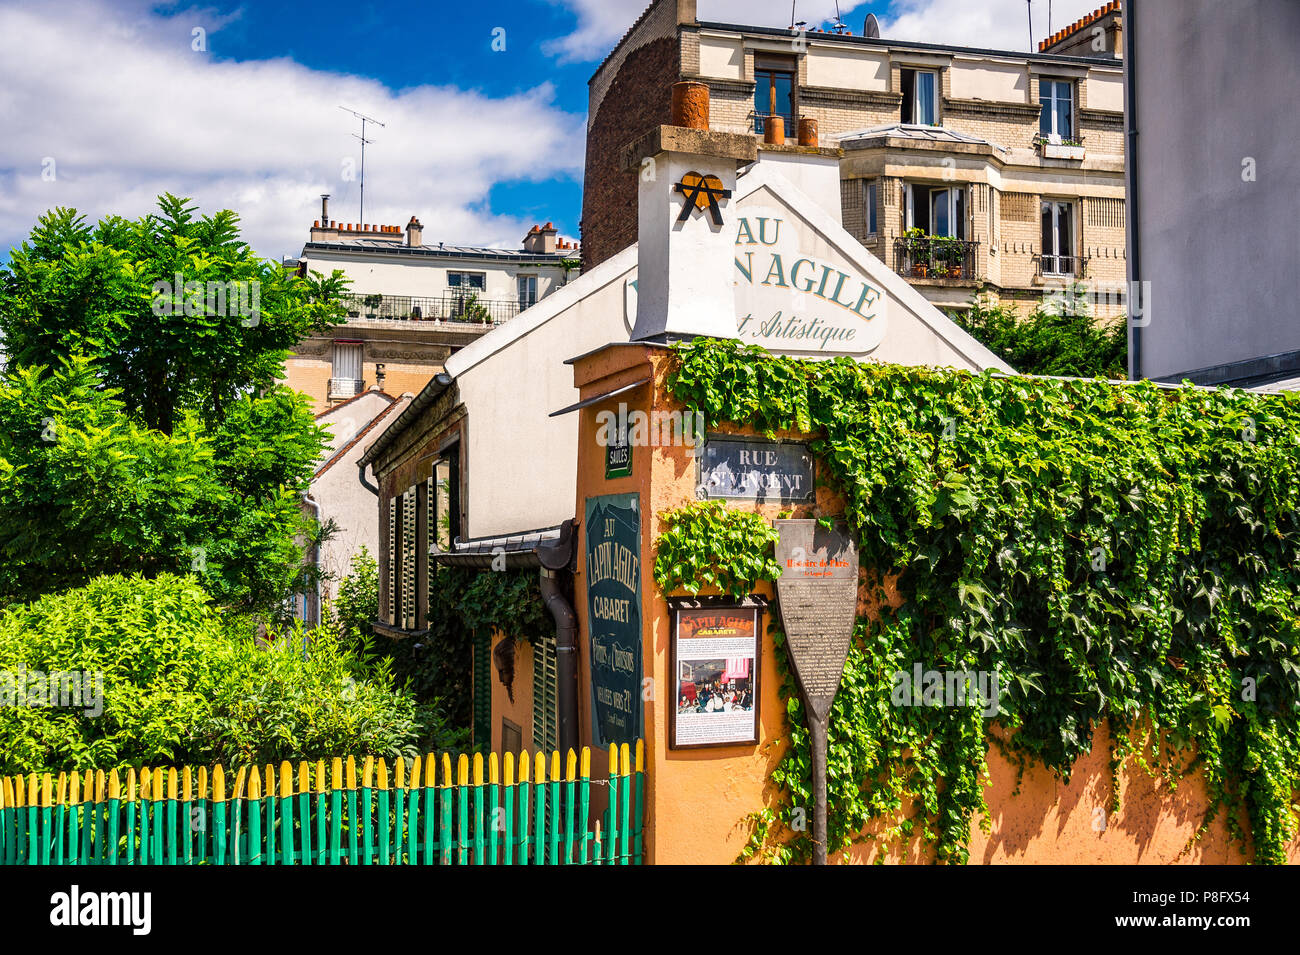 Lapin Agile is a famous Montmartre cabaret, at 22 Rue des Saules, 18th arrondissement of Paris, France. Stock Photo